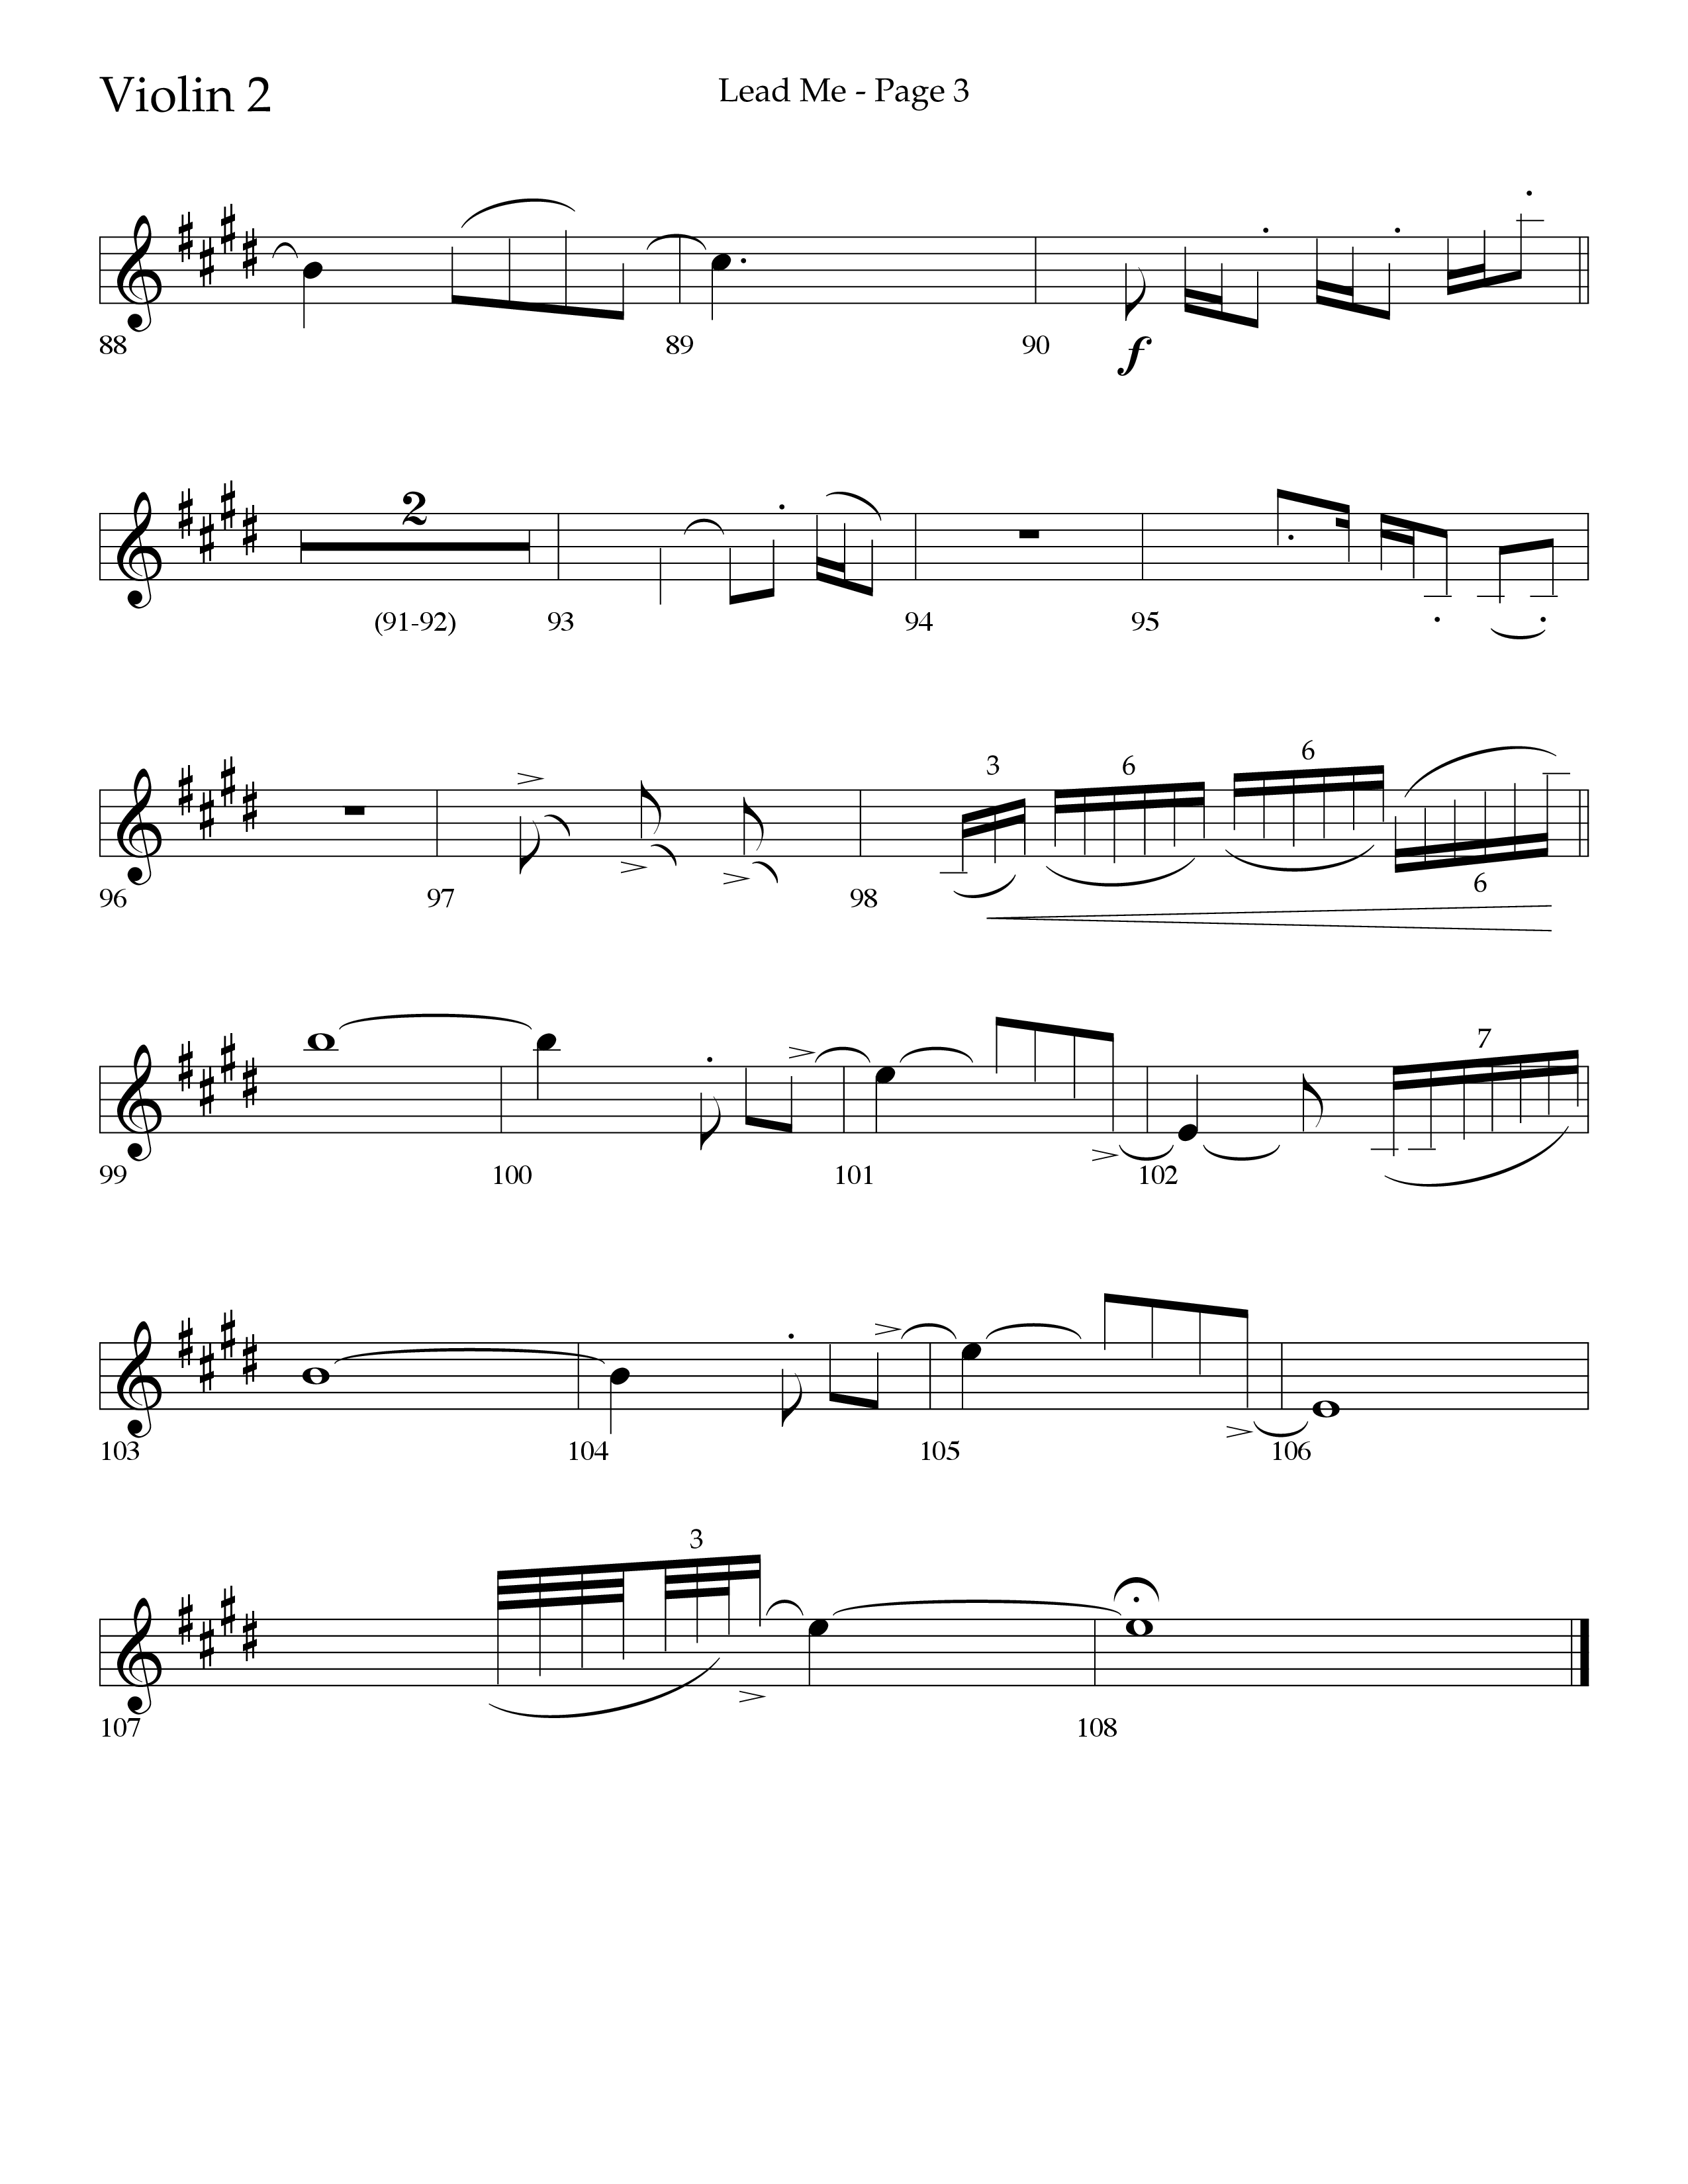 Lead Me (Choral Anthem SATB) Violin 2 (Lifeway Choral / Arr. Jason Webb)